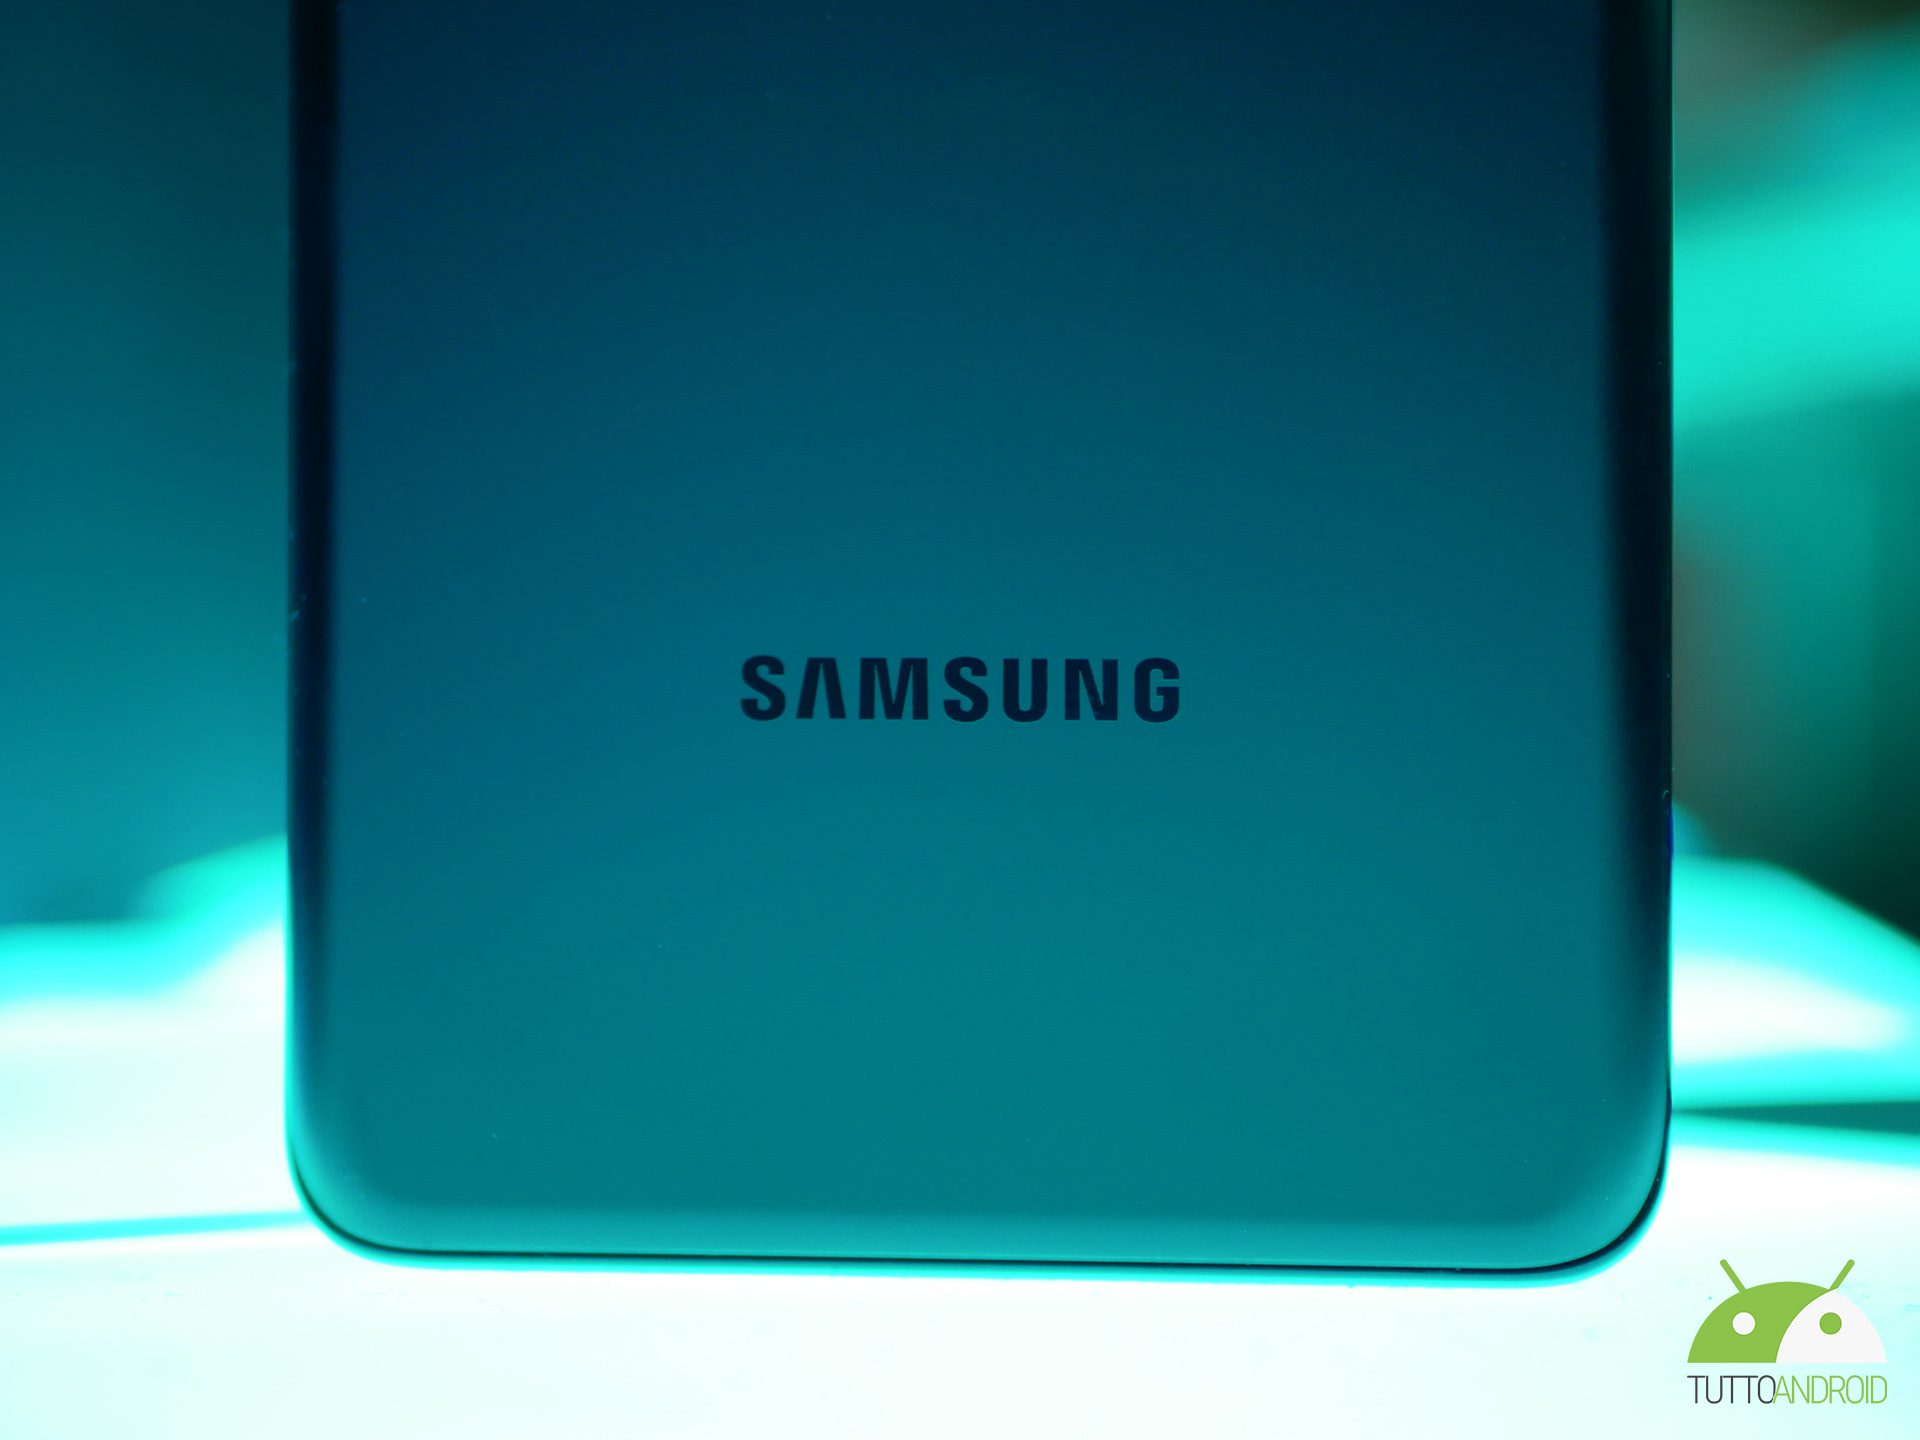 Samsung galaxy logo2